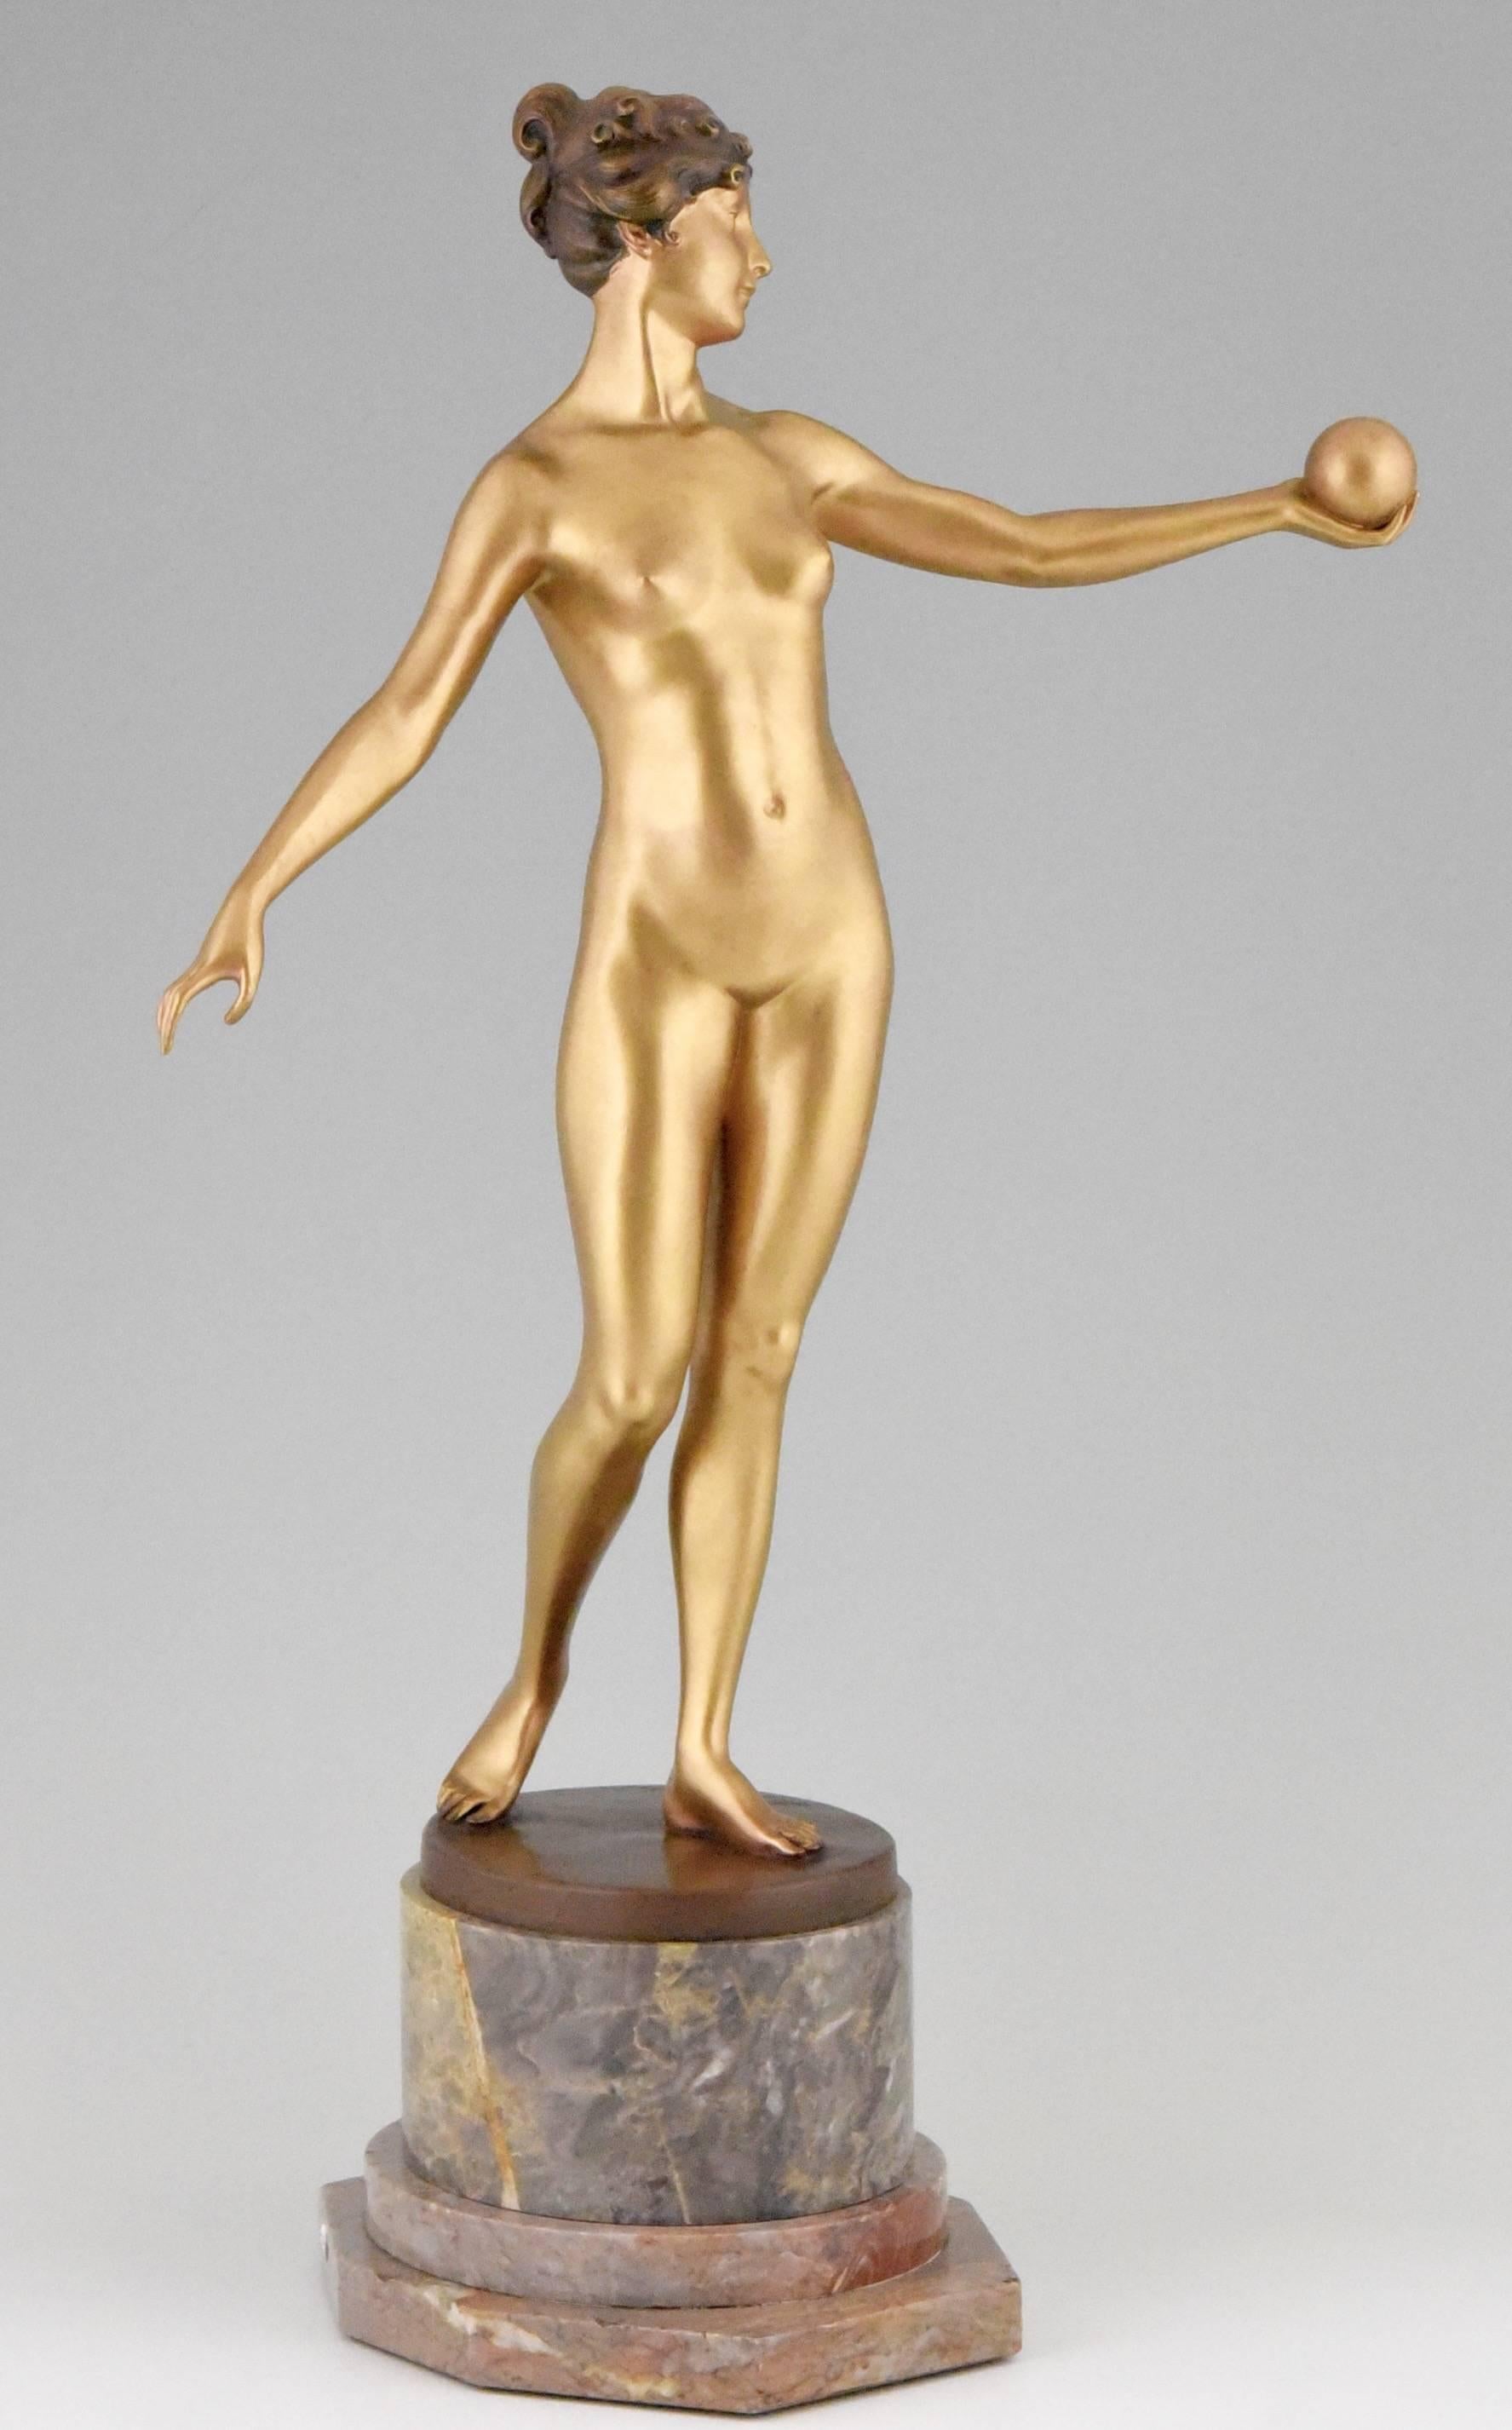 Gilt Art Nouveau bronze sculpture of a nude holding a ball by Hans Keck 1900